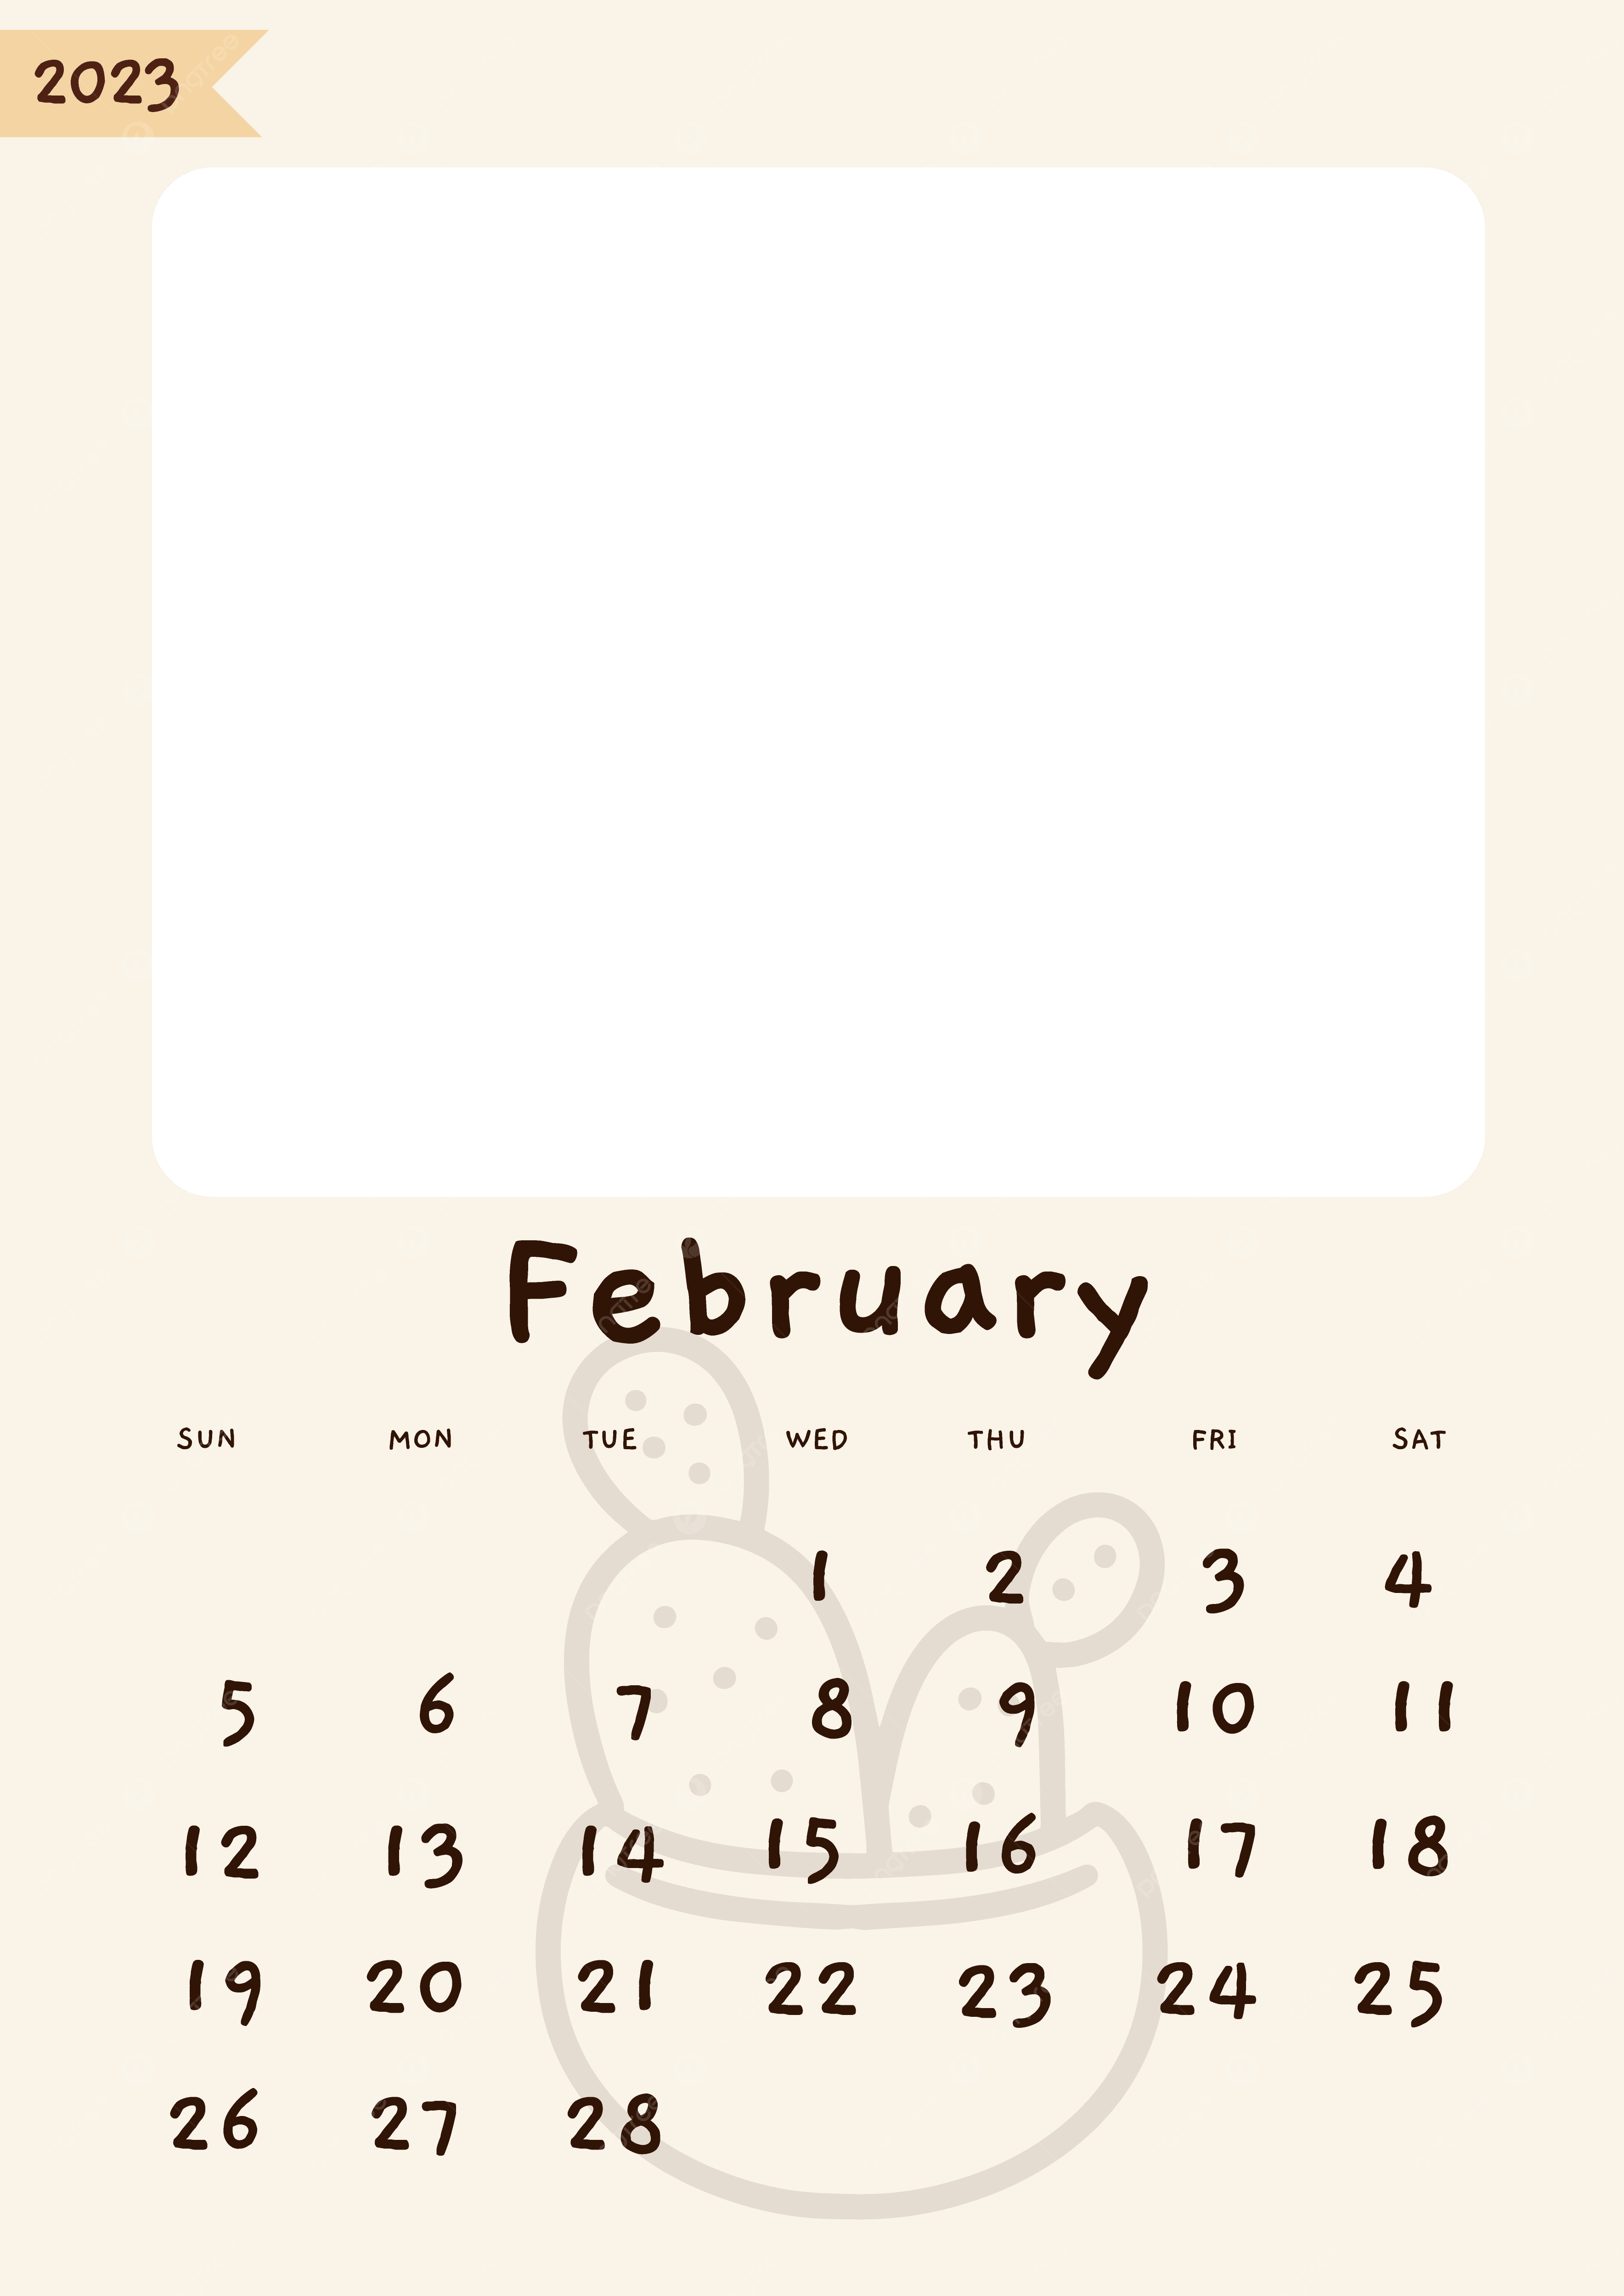 Kalender 2023 Hintergrundbild 3536x5000. Kalender Februar 2023 Niedlich ästhetisch Minimalistisch Einfach, Kalender, Minimalistisch PNG und Vektor zum kostenlosen Download